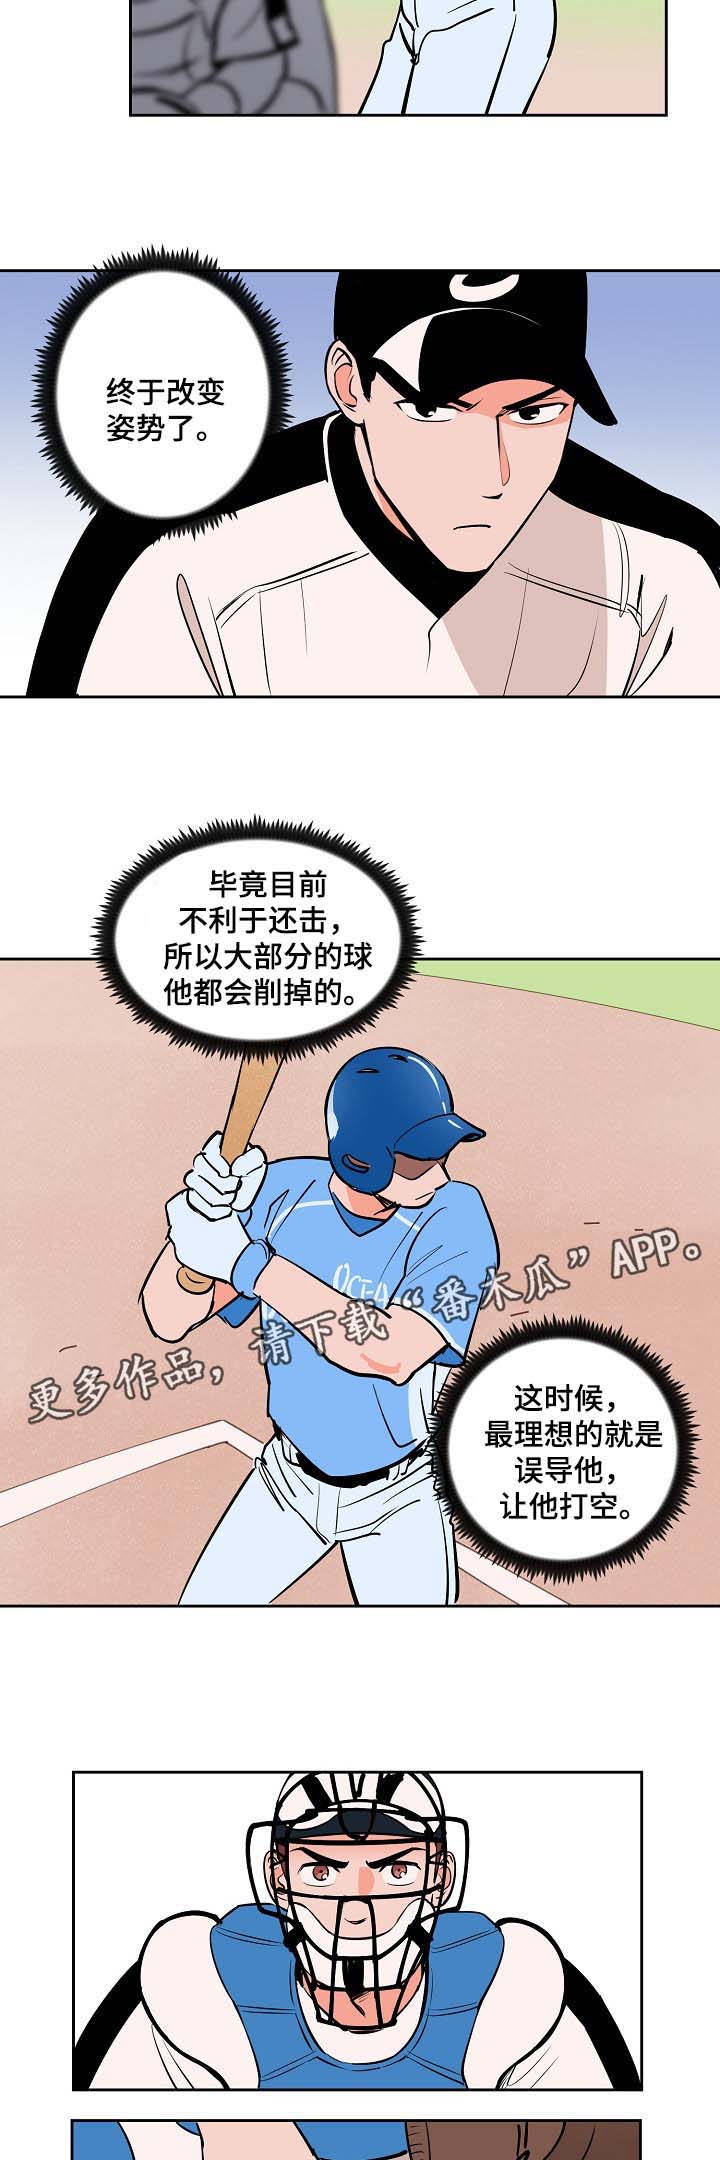 第87章釜山棒球赛4